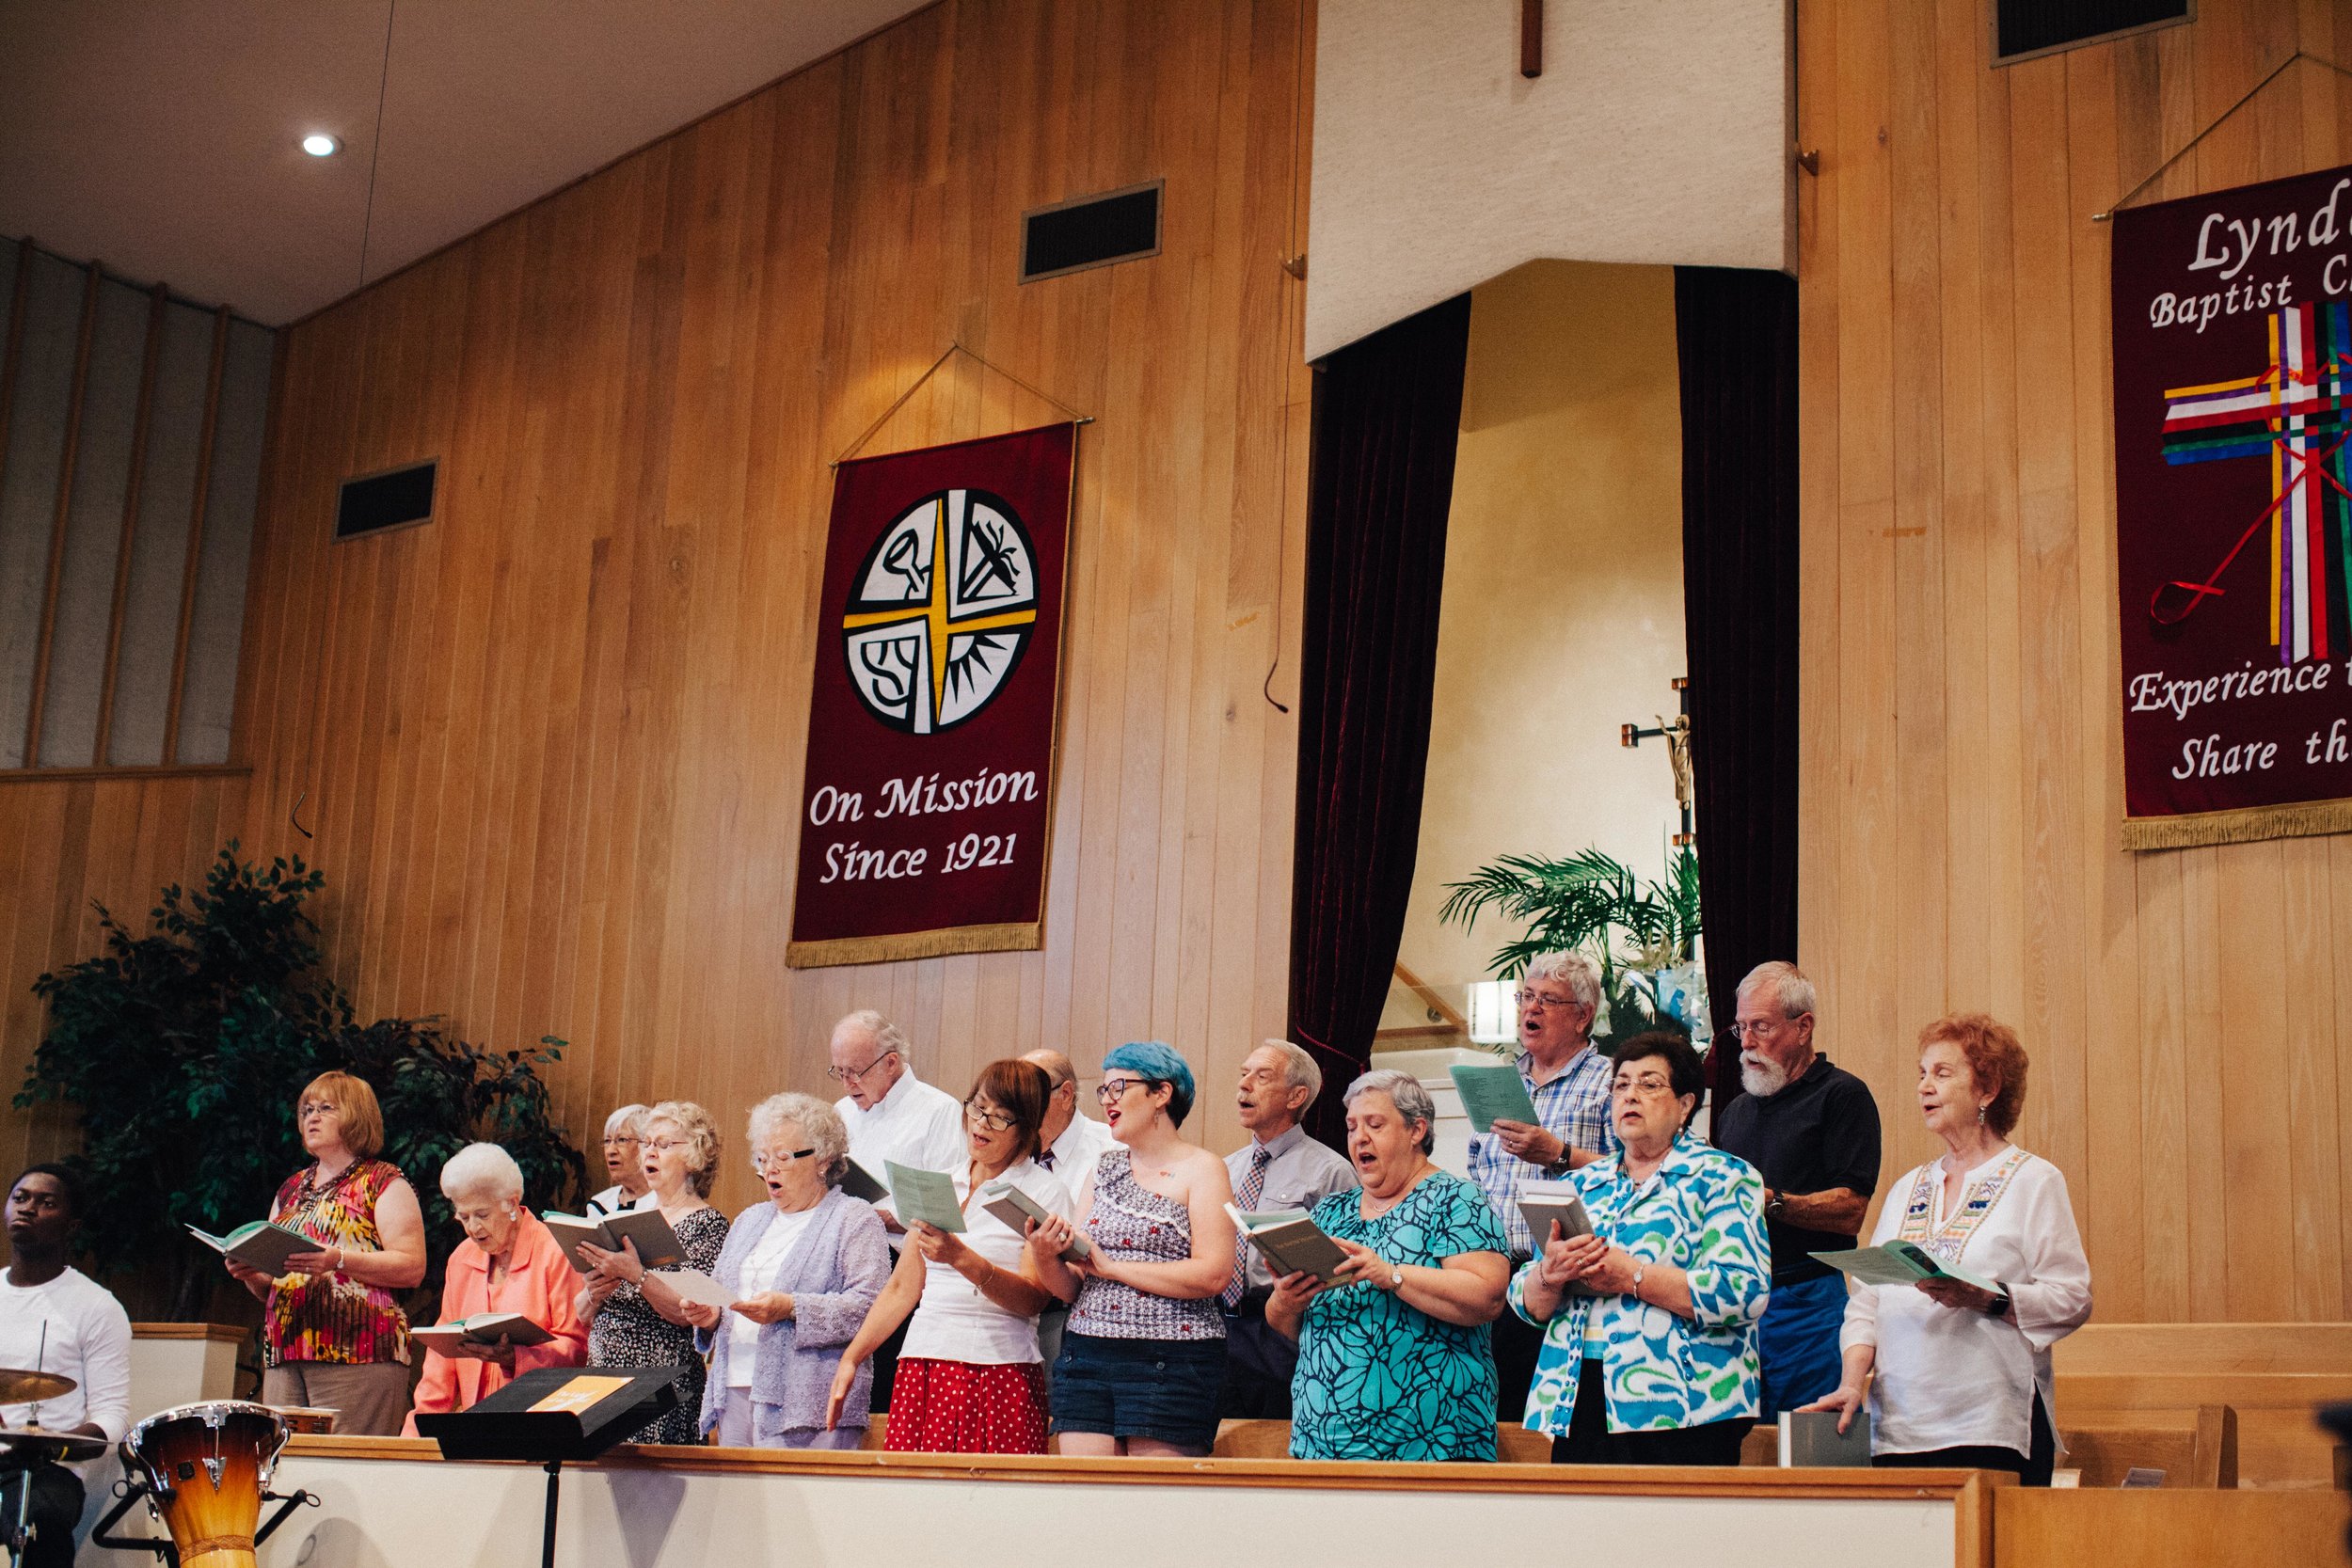 Lyndon Baptist Choir